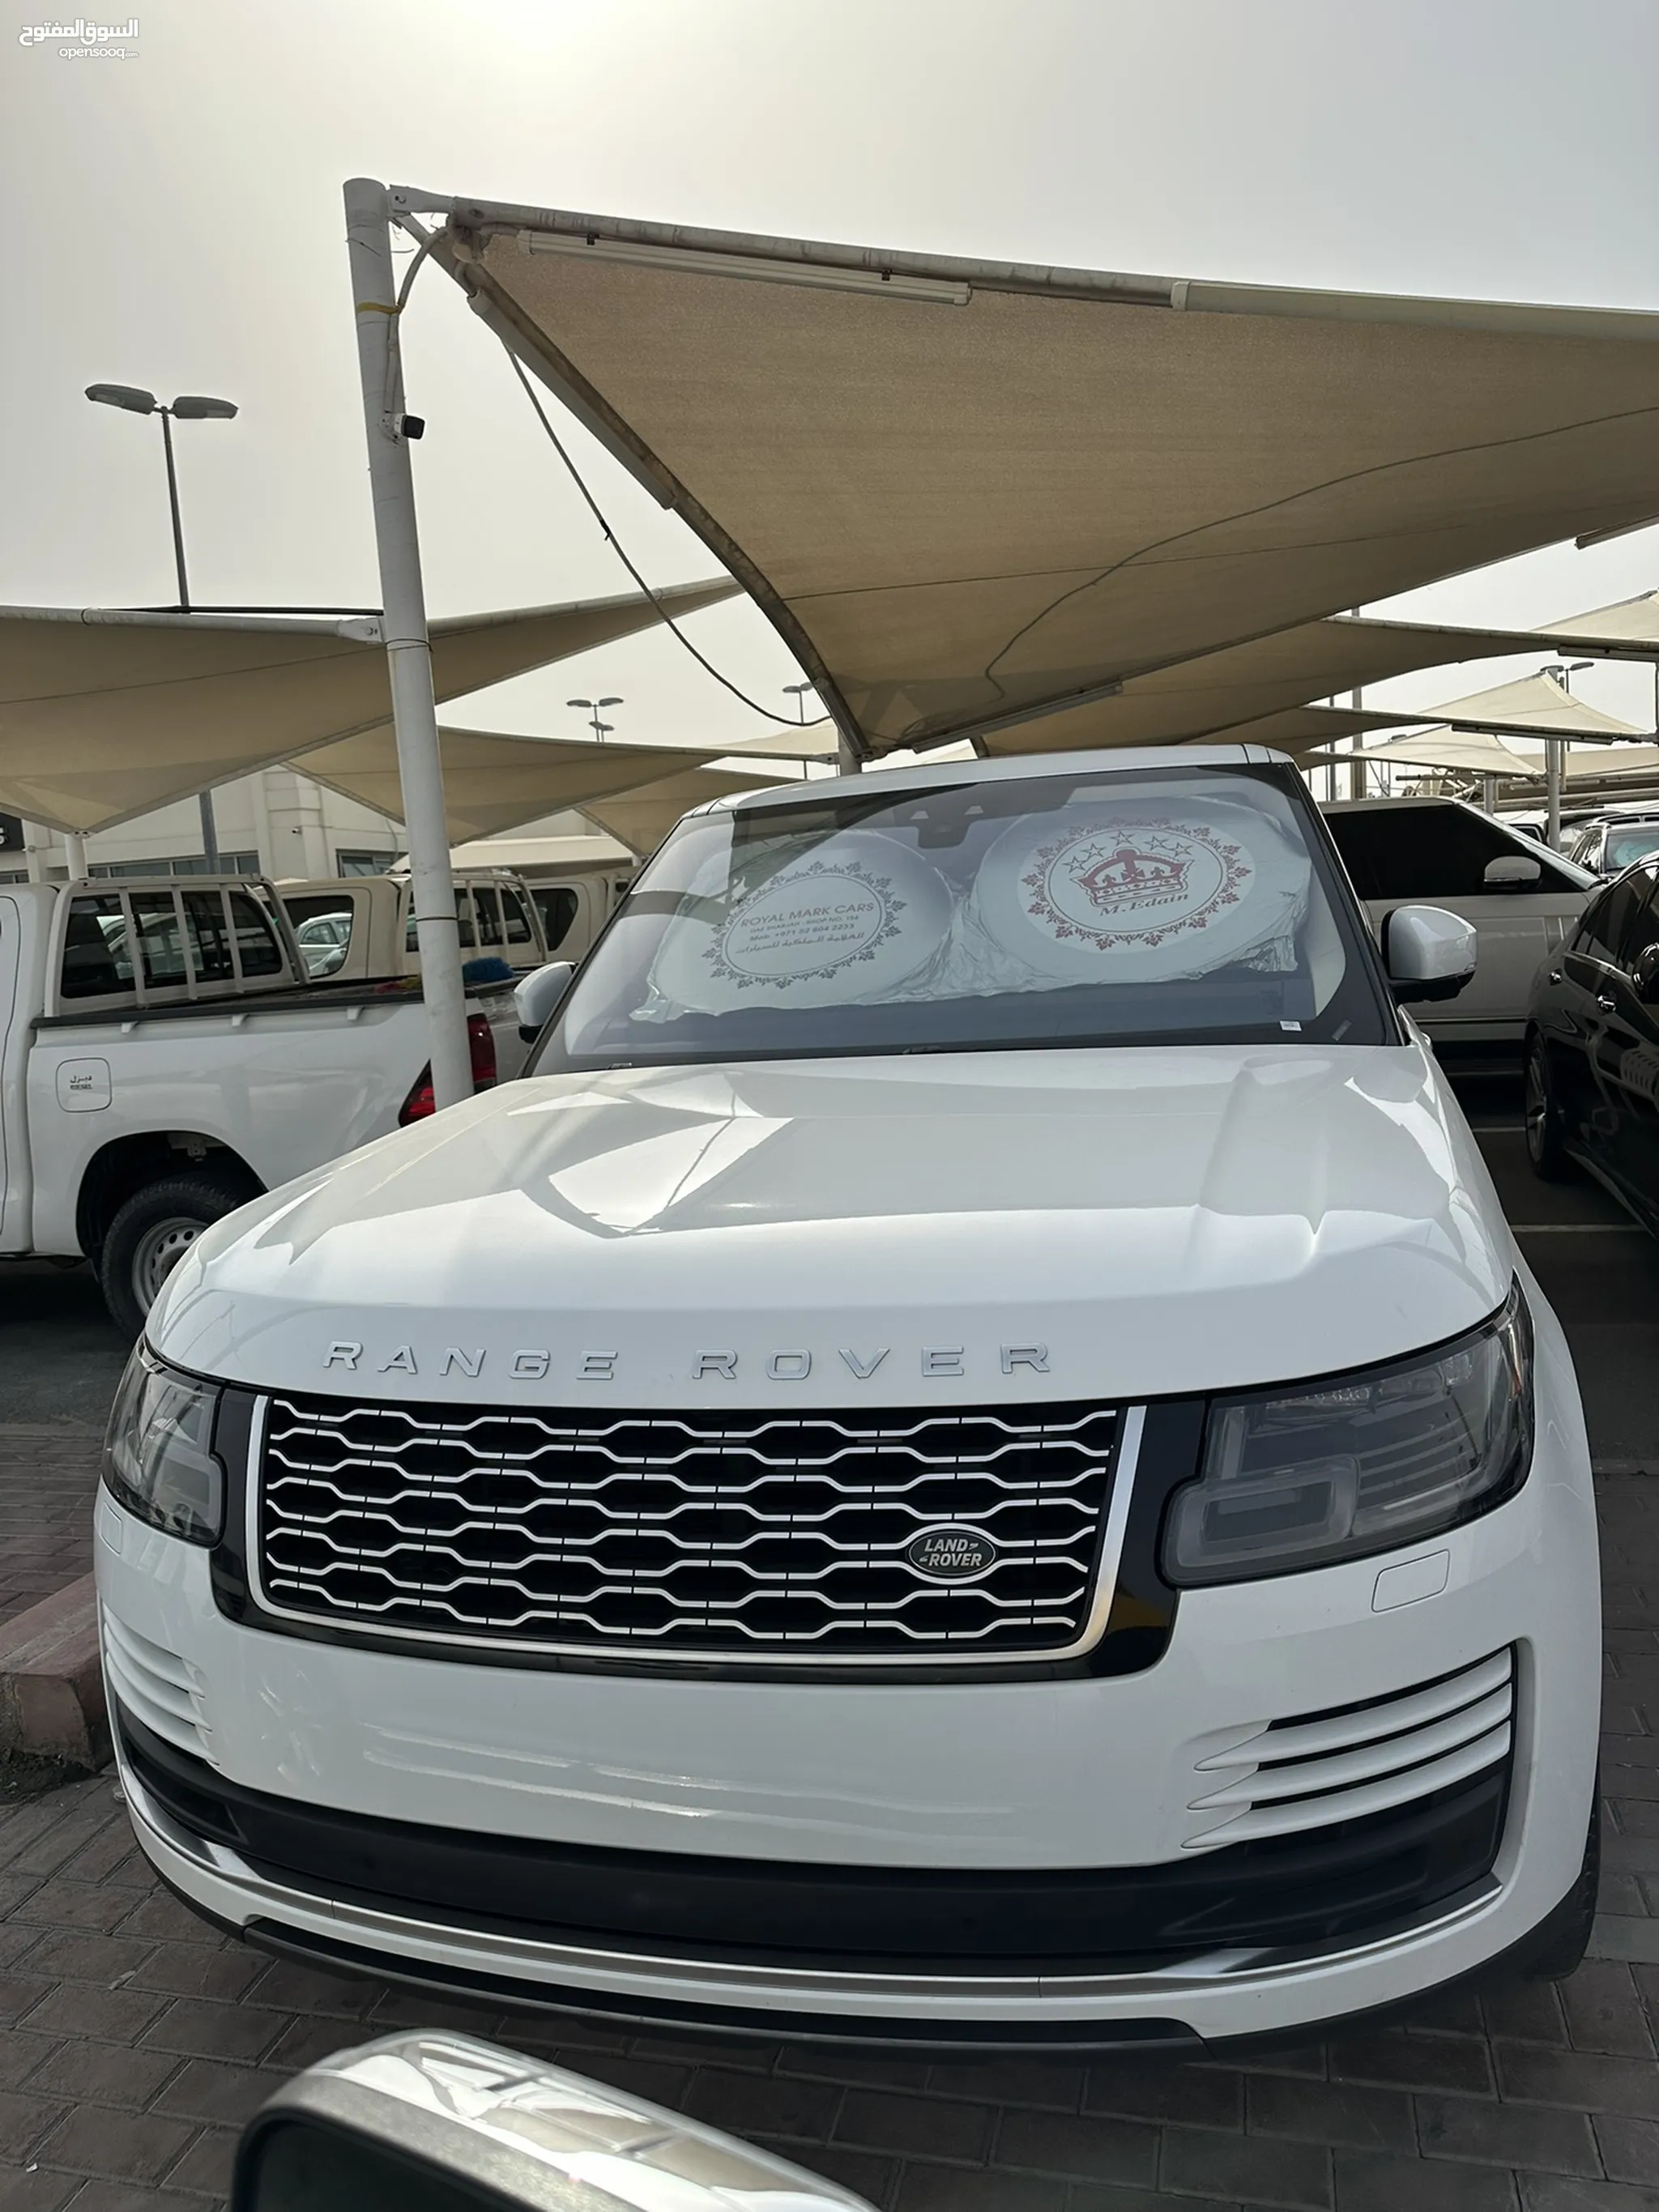 سيارات لاند روفر رنج روفر فوج 2020 للبيع في الإمارات | السوق المفتوح